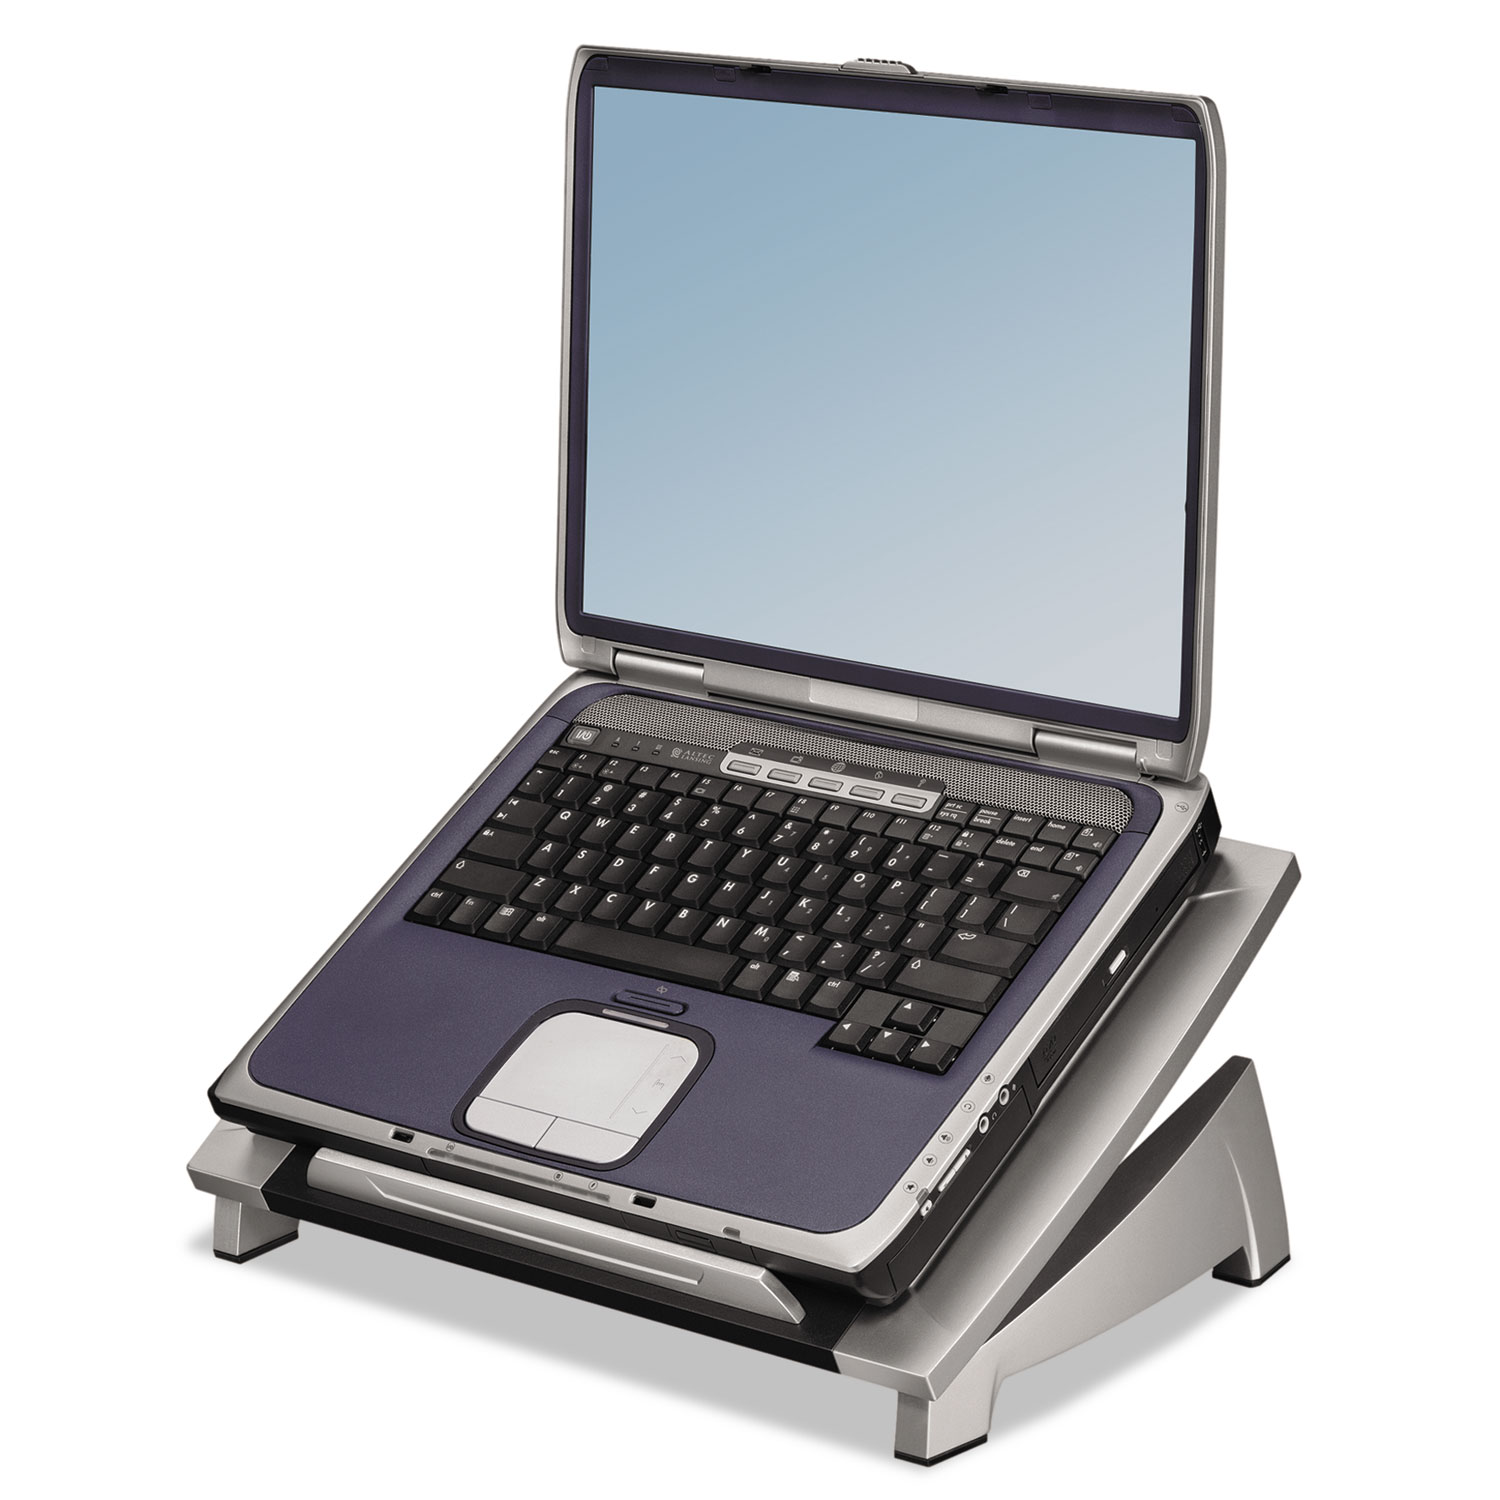  Fellowes 8032001 Office Suites Laptop Riser, 15 1/8 x 11 3/8 x 4 1/2-6 1/2, Black/Silver (FEL8032001) 